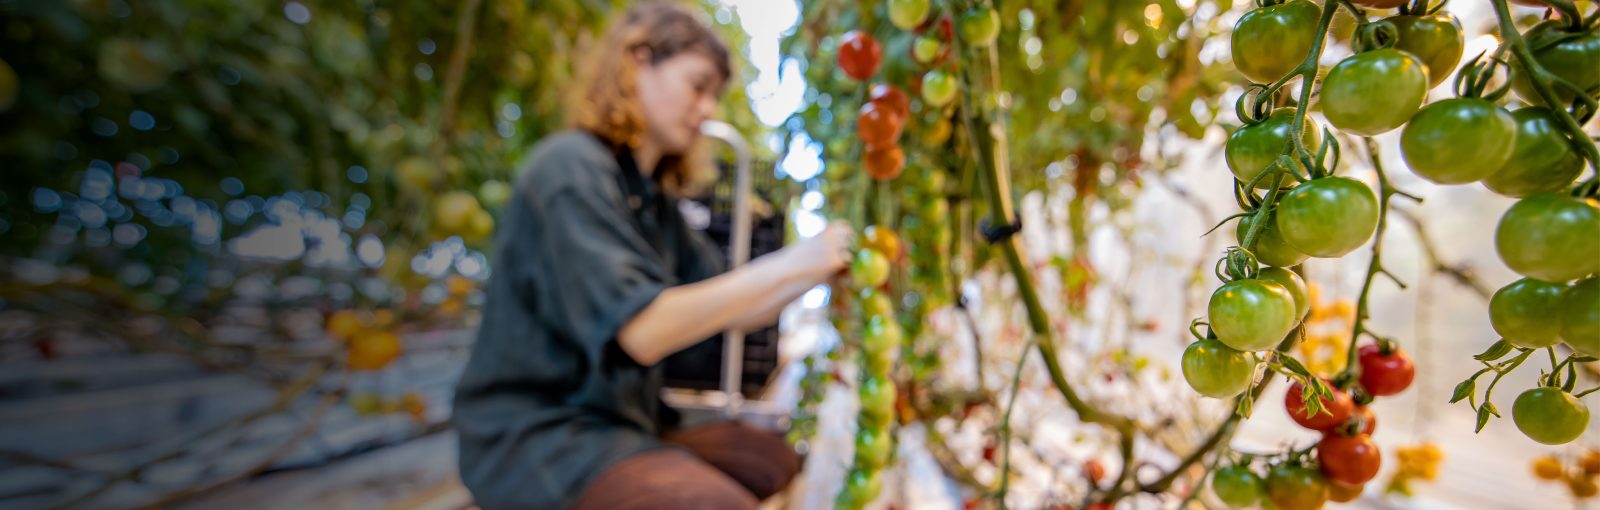 Femme accroupie qui récolte des tomates dans une serre